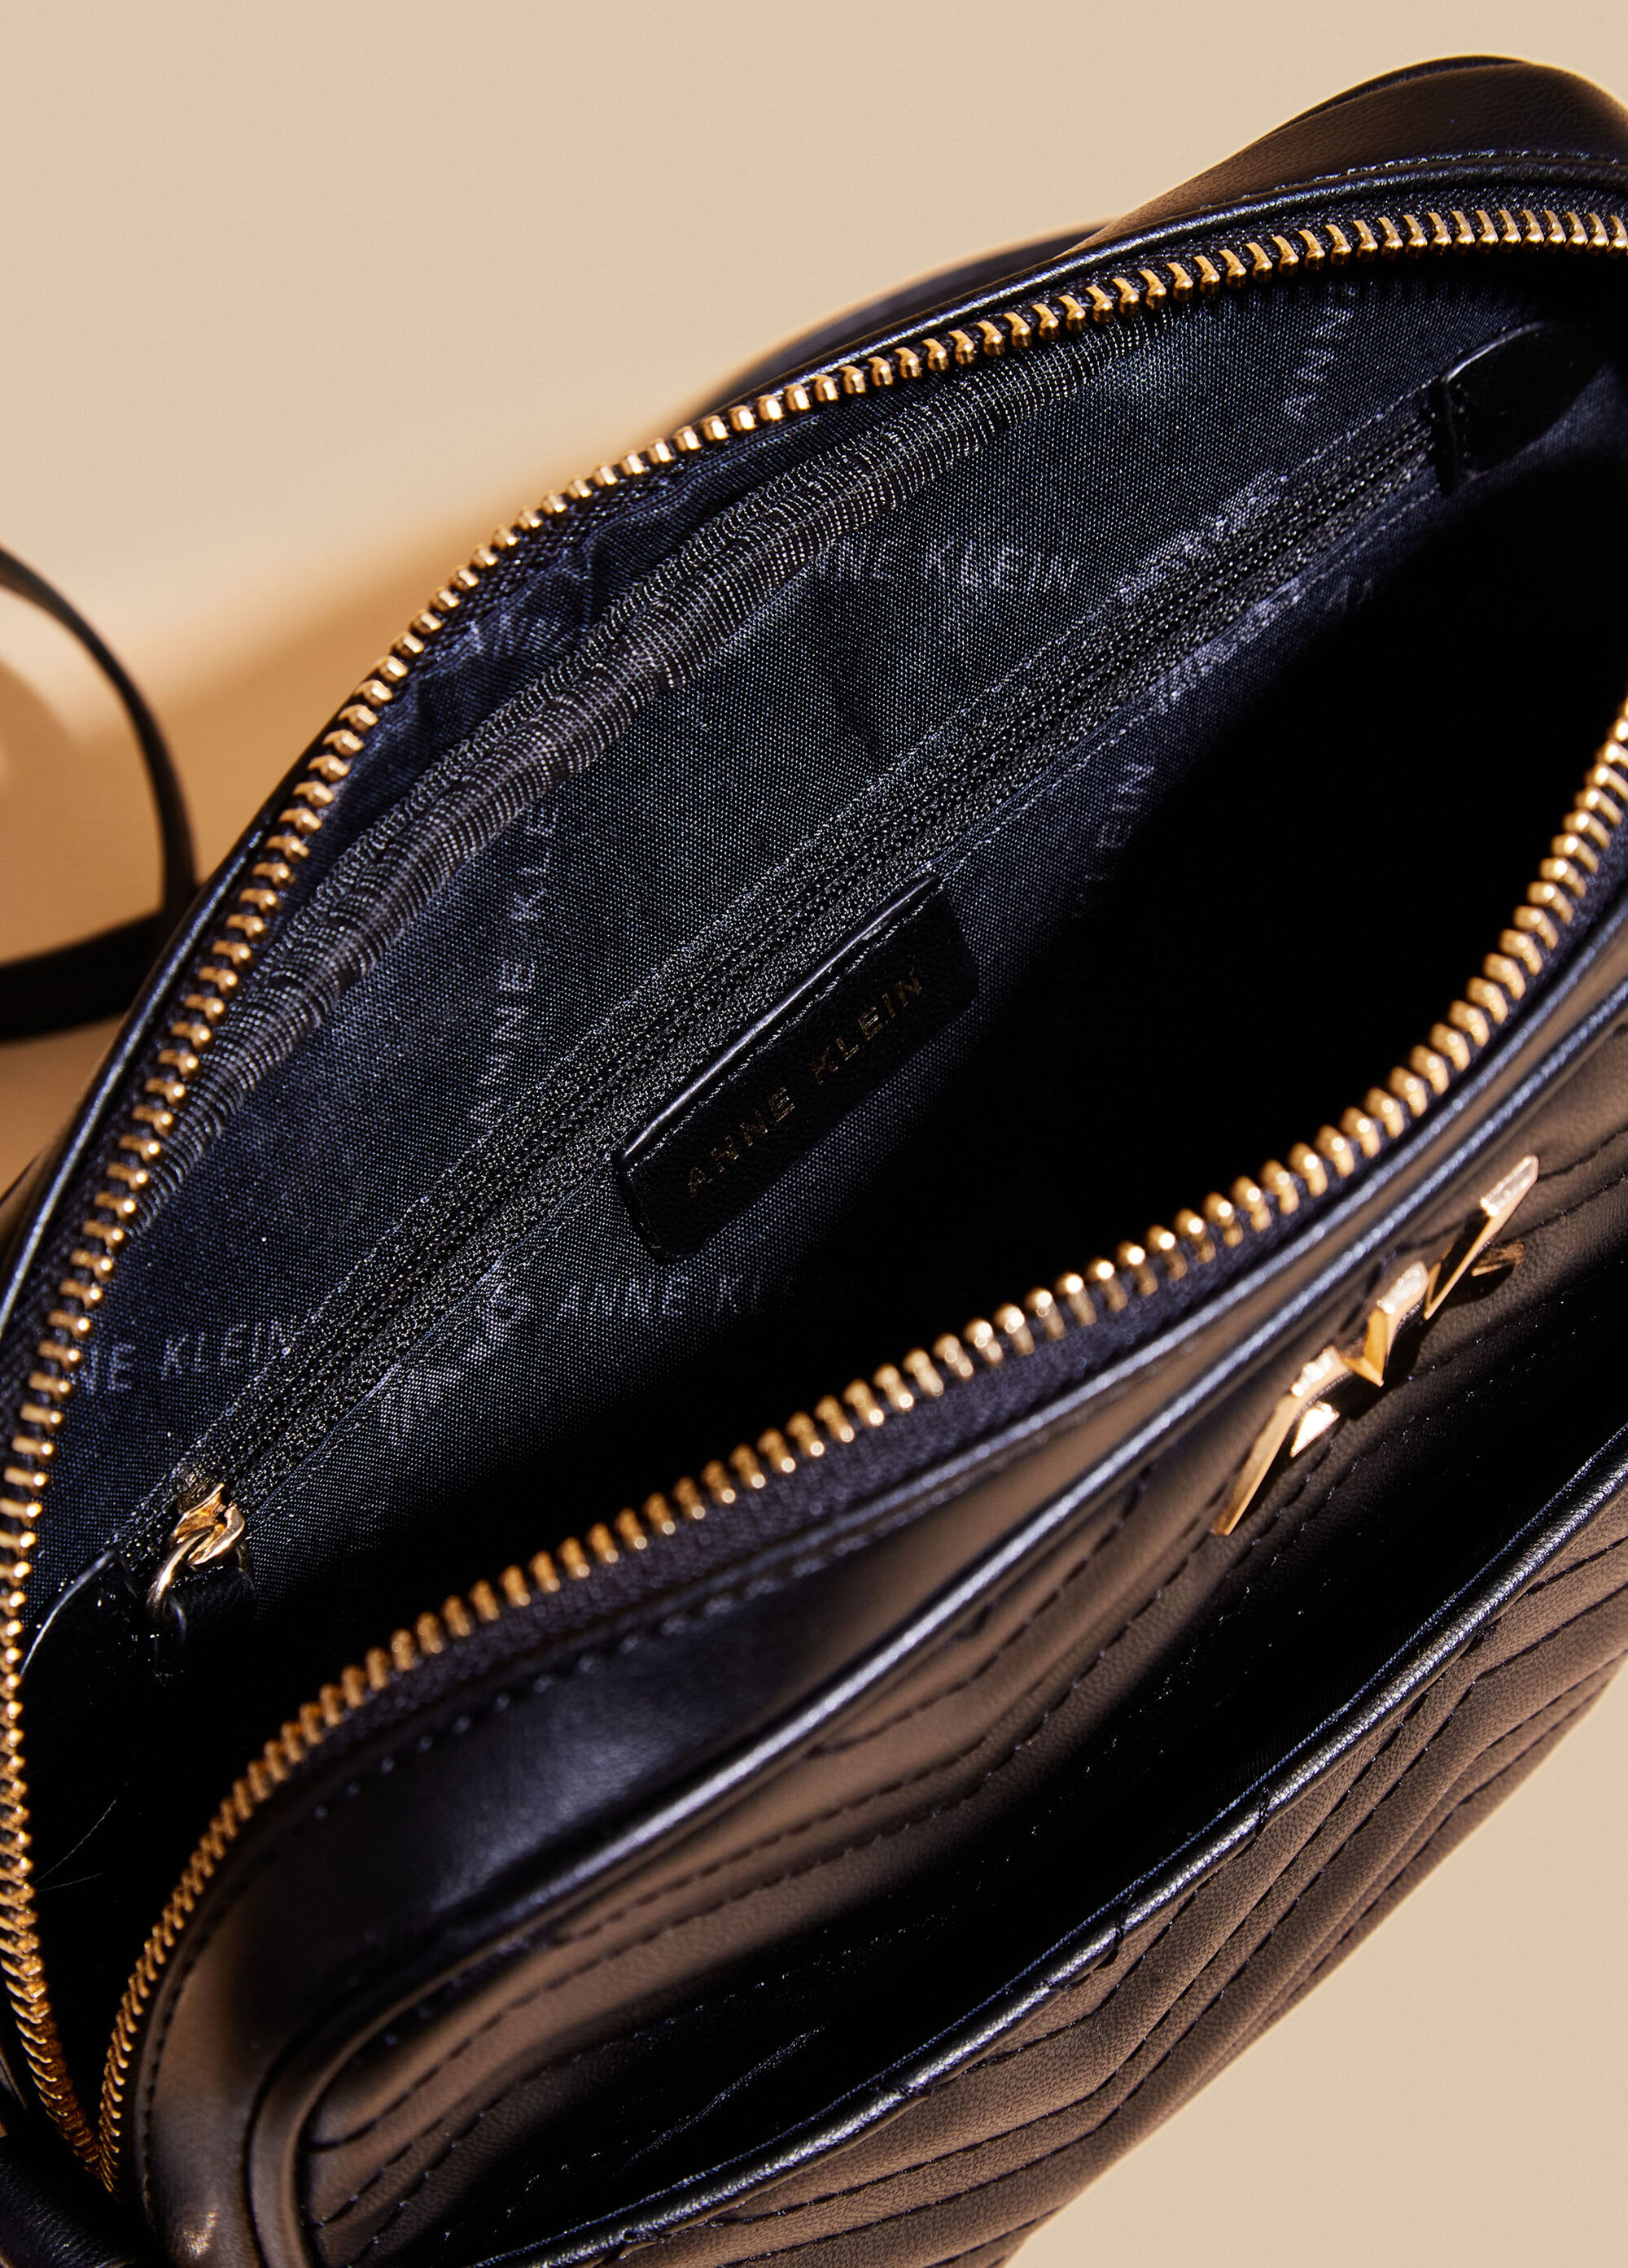 Designer Anne Klein Crossbody Vegan Leather Shoulder Bag Handbag